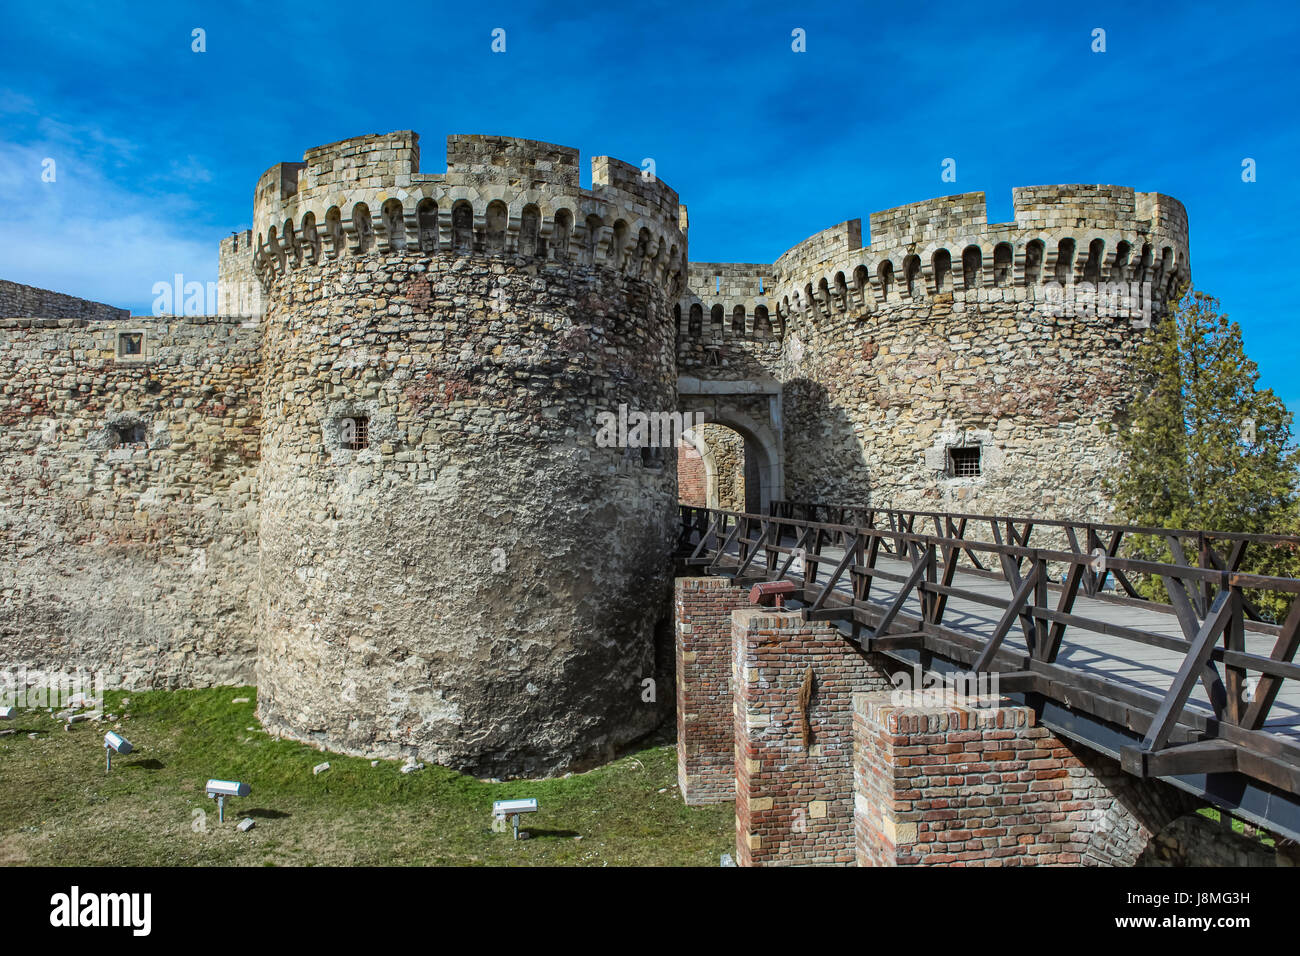 Dettaglio della fortezza di Kalemegdan a Belgrado in Serbia Foto Stock